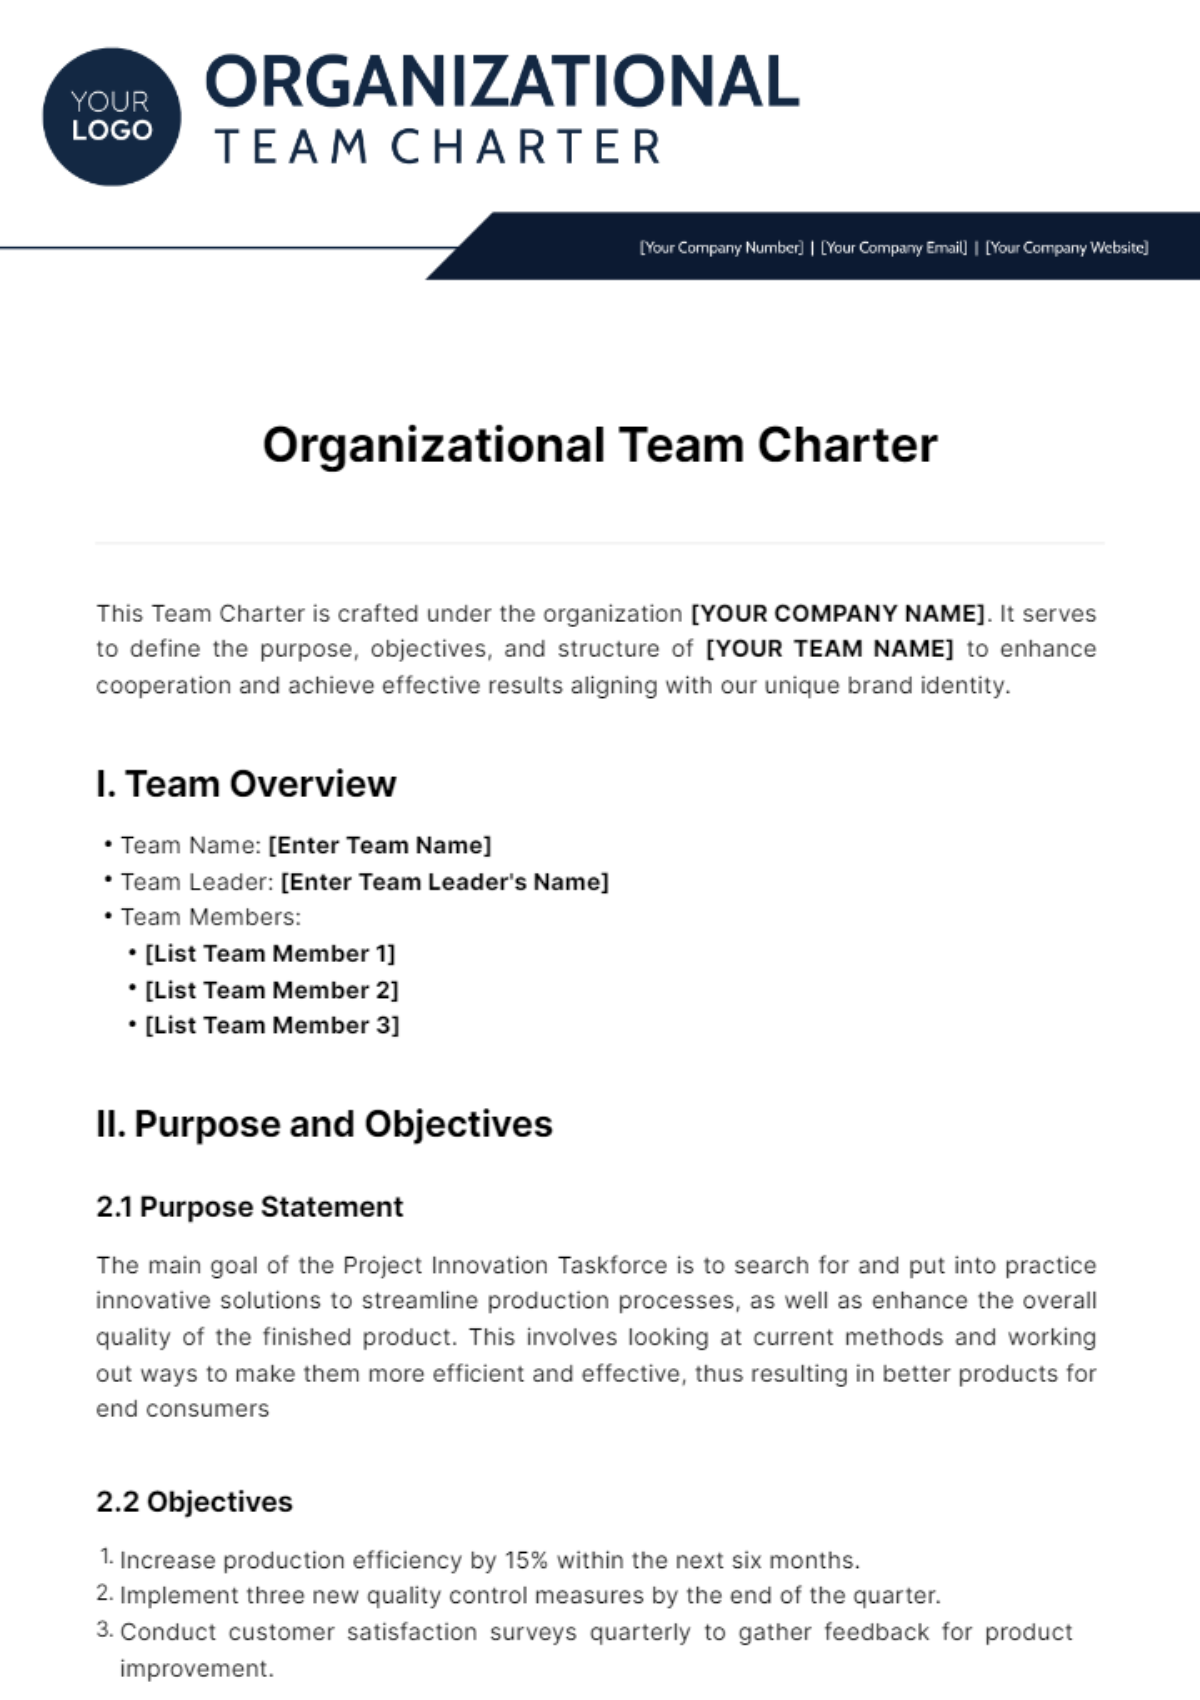 Organizational Team Charter Template